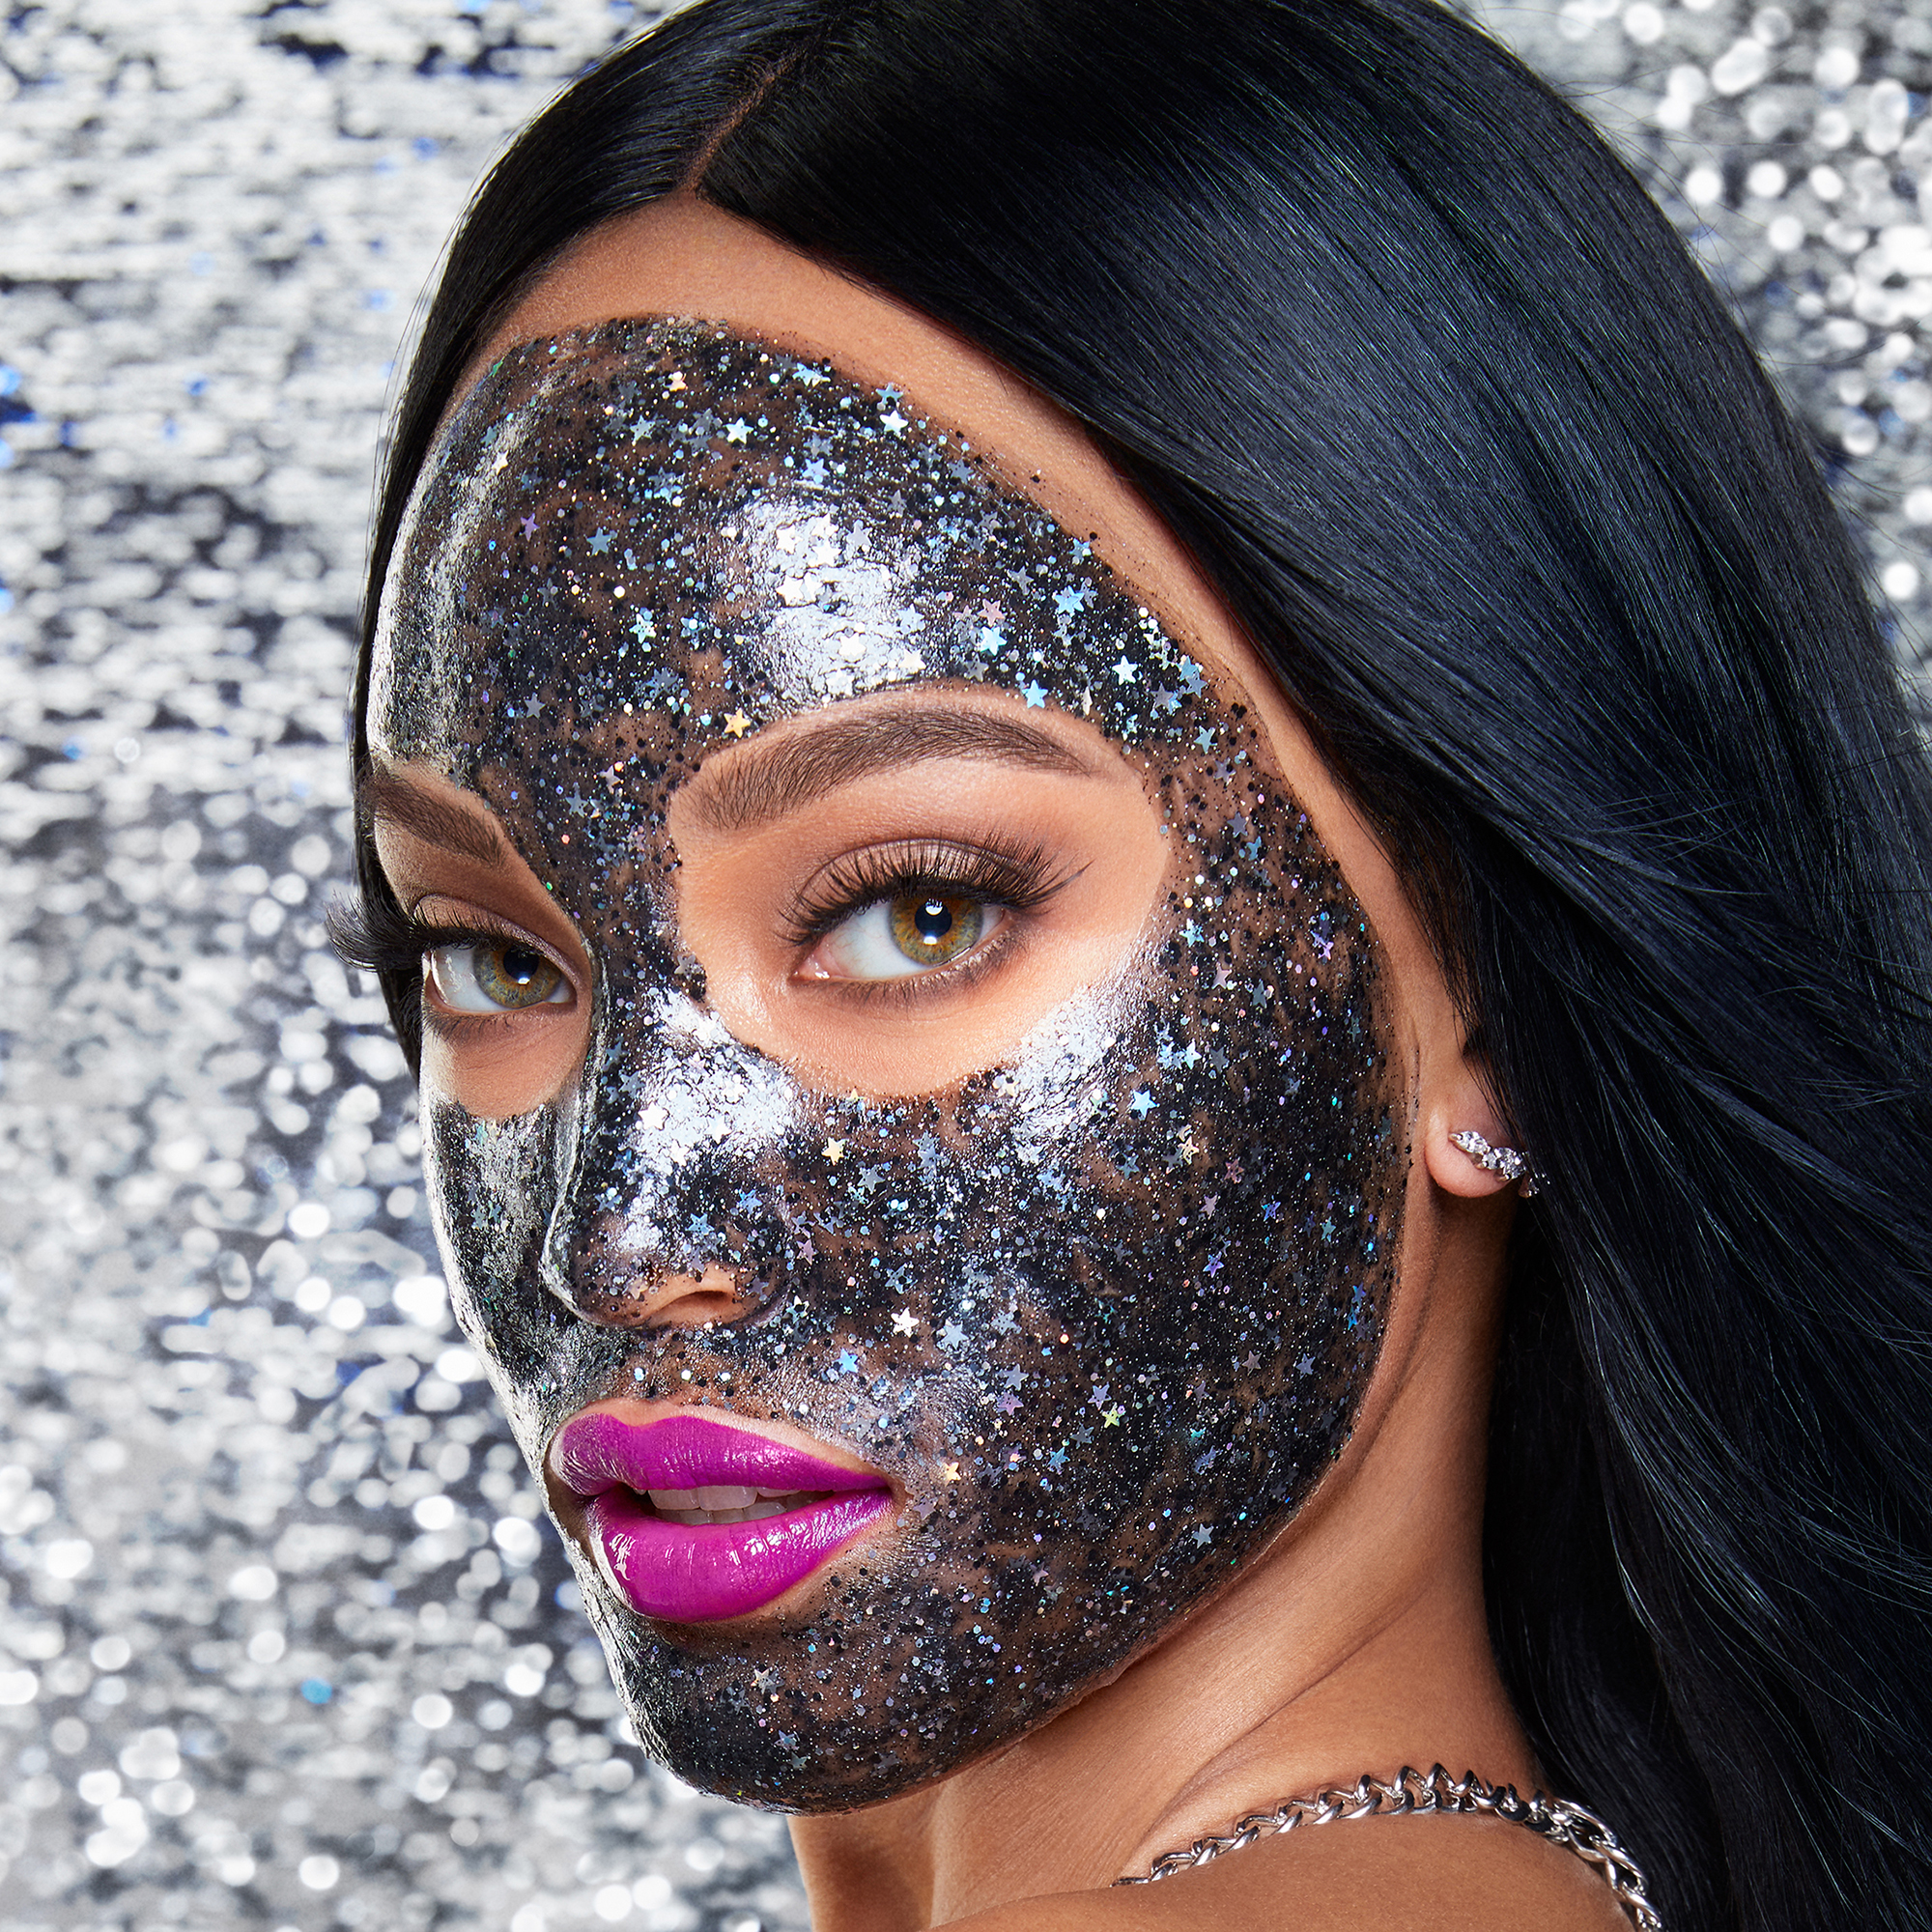 Η διάσημη μάσκα προσώπου με glitter ήρθε στην Ελλάδα και έχουμε όλα τα info!